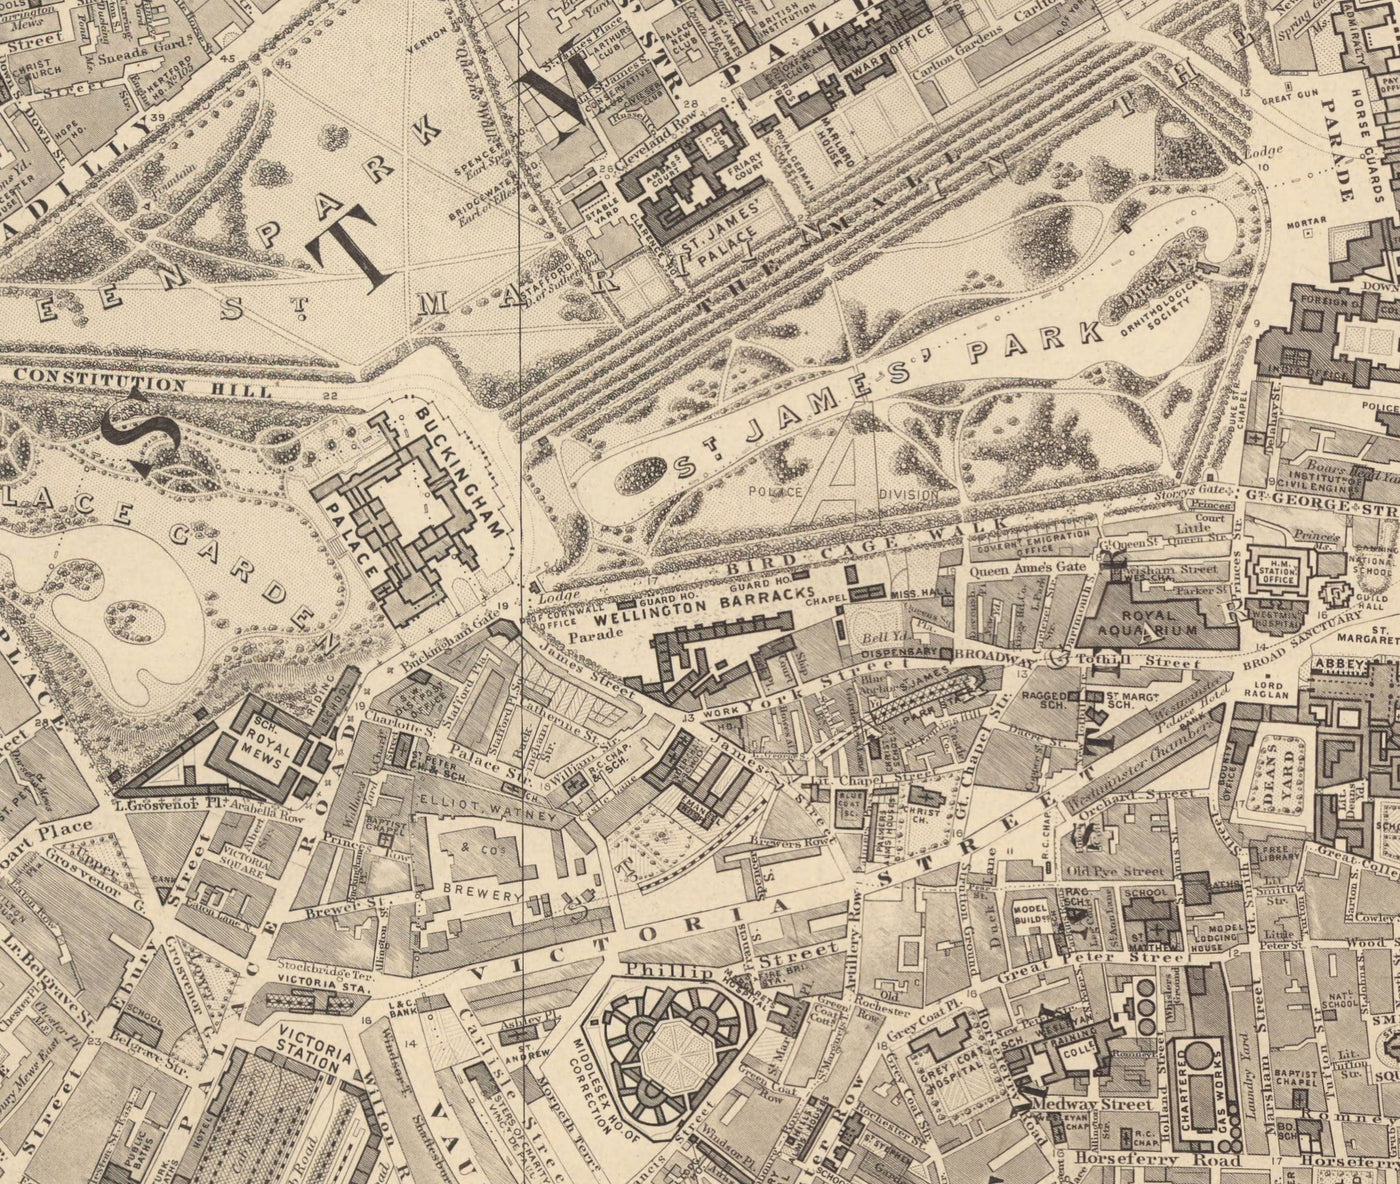 Alte Karte von Central London von Edward Stanford, 1862 - Mayfair, Oxford Street, Westminster, Knightsbridge, Waterloo - W1, WC1, WC2, SW1, W2